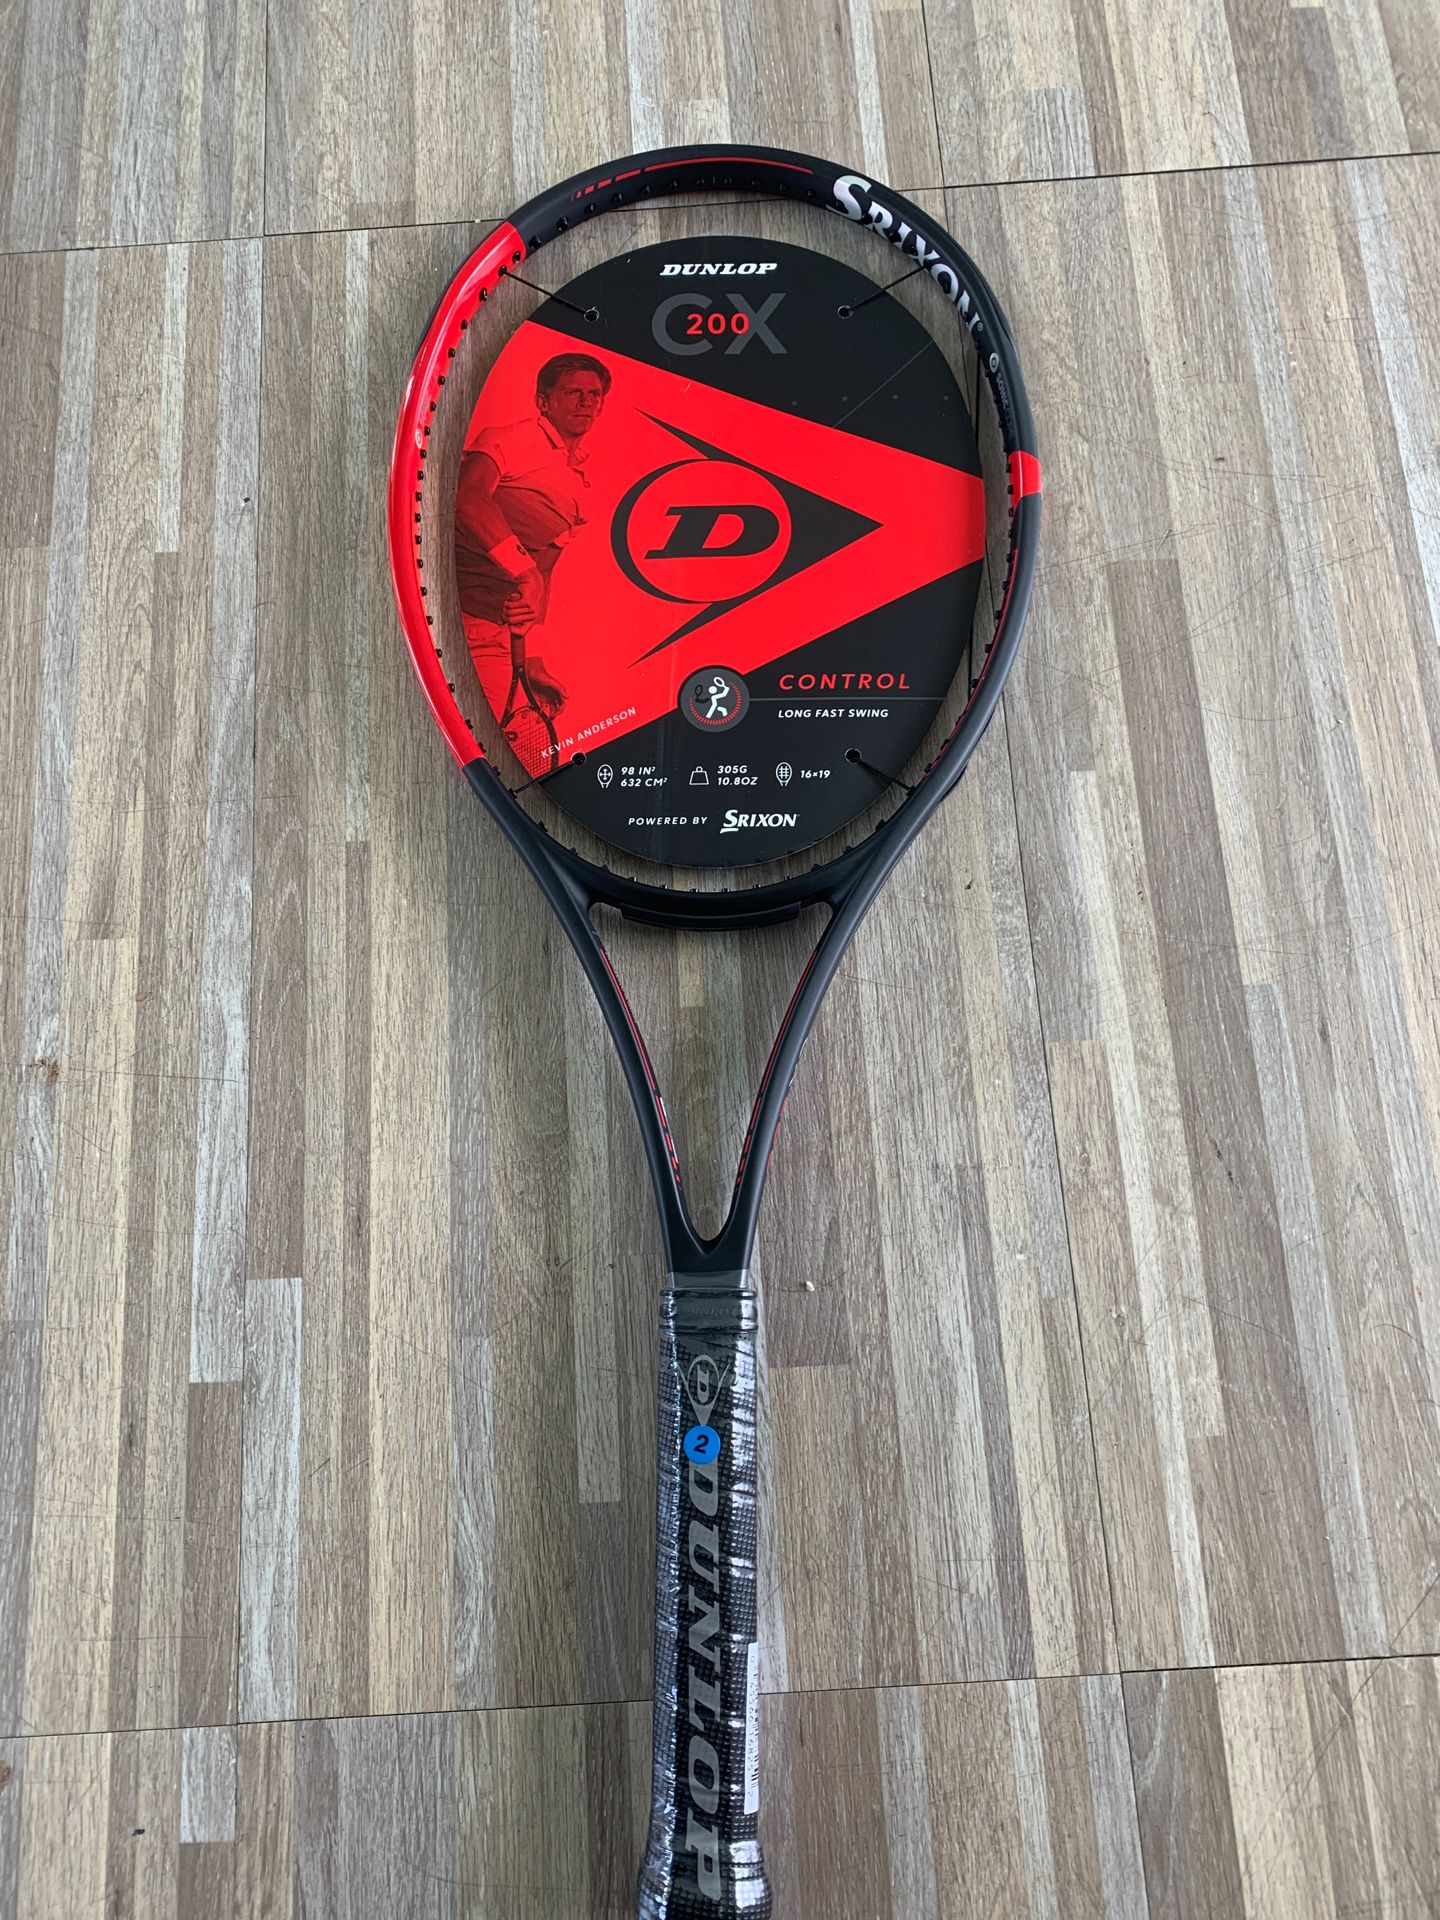 Dunlop Srixon CX200 tennis rackets